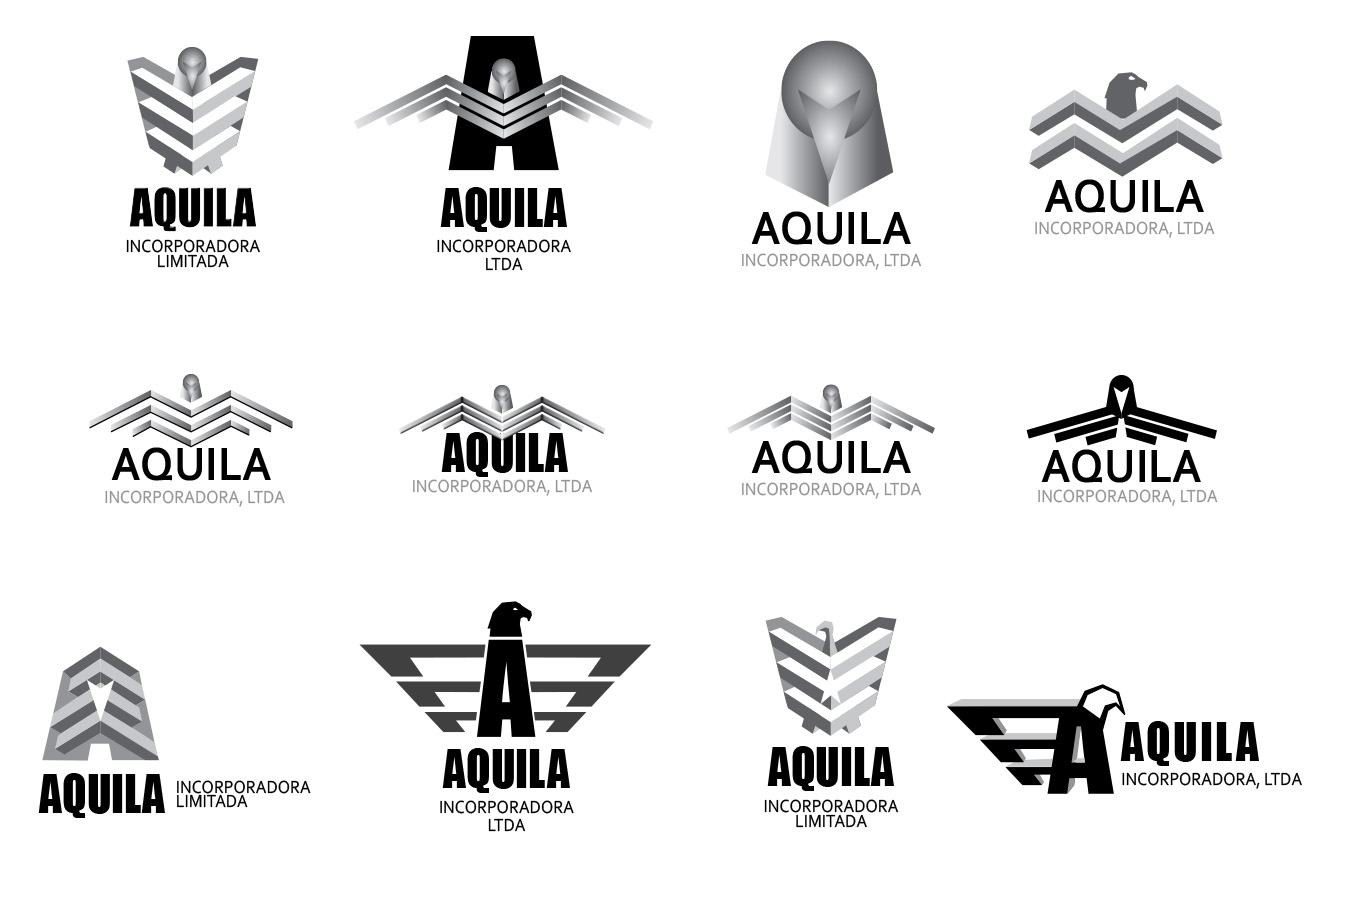 Aquila 2 : Initial design concepts for logo